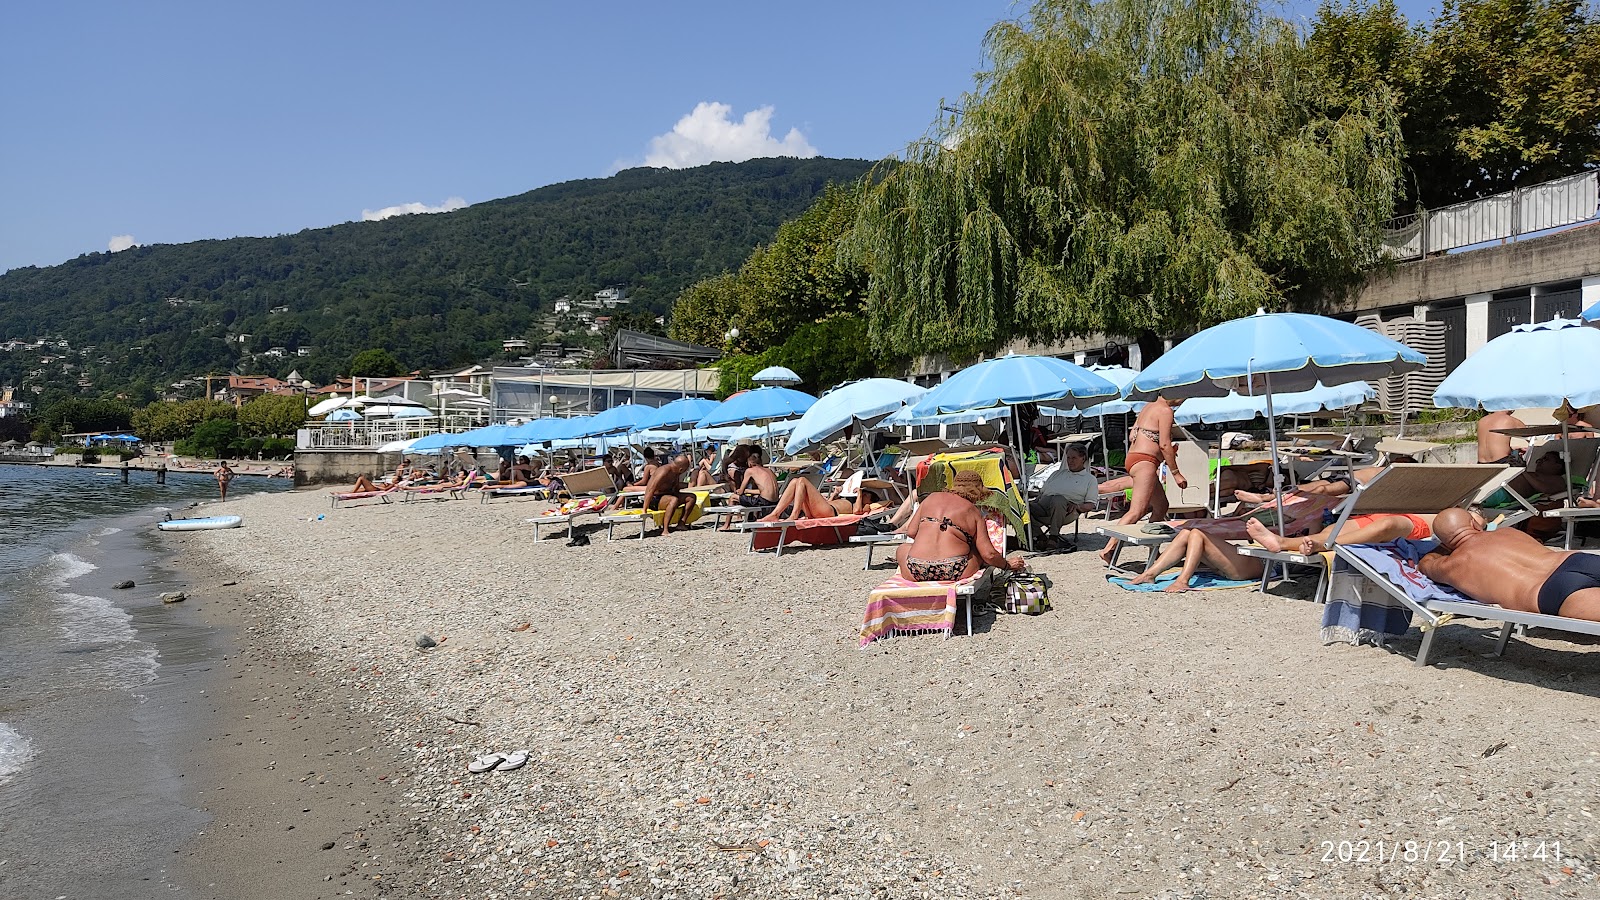 Spiaggia di Suna'in fotoğrafı doğrudan plaj ile birlikte